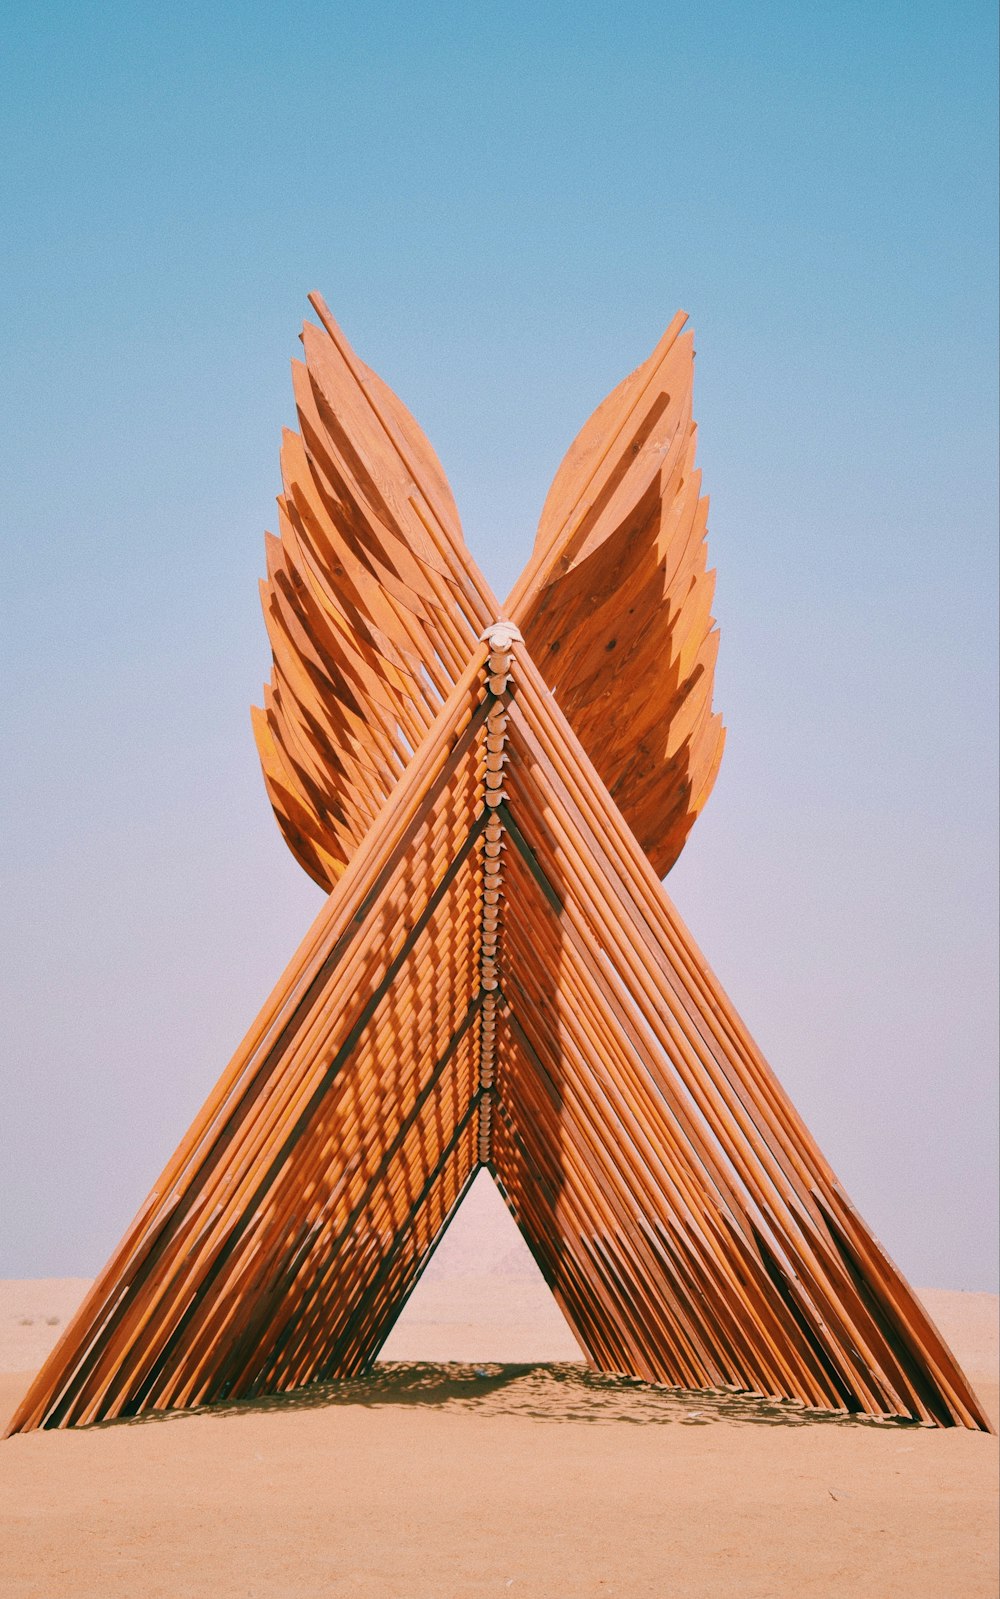 a sculpture made of wooden sticks in the desert